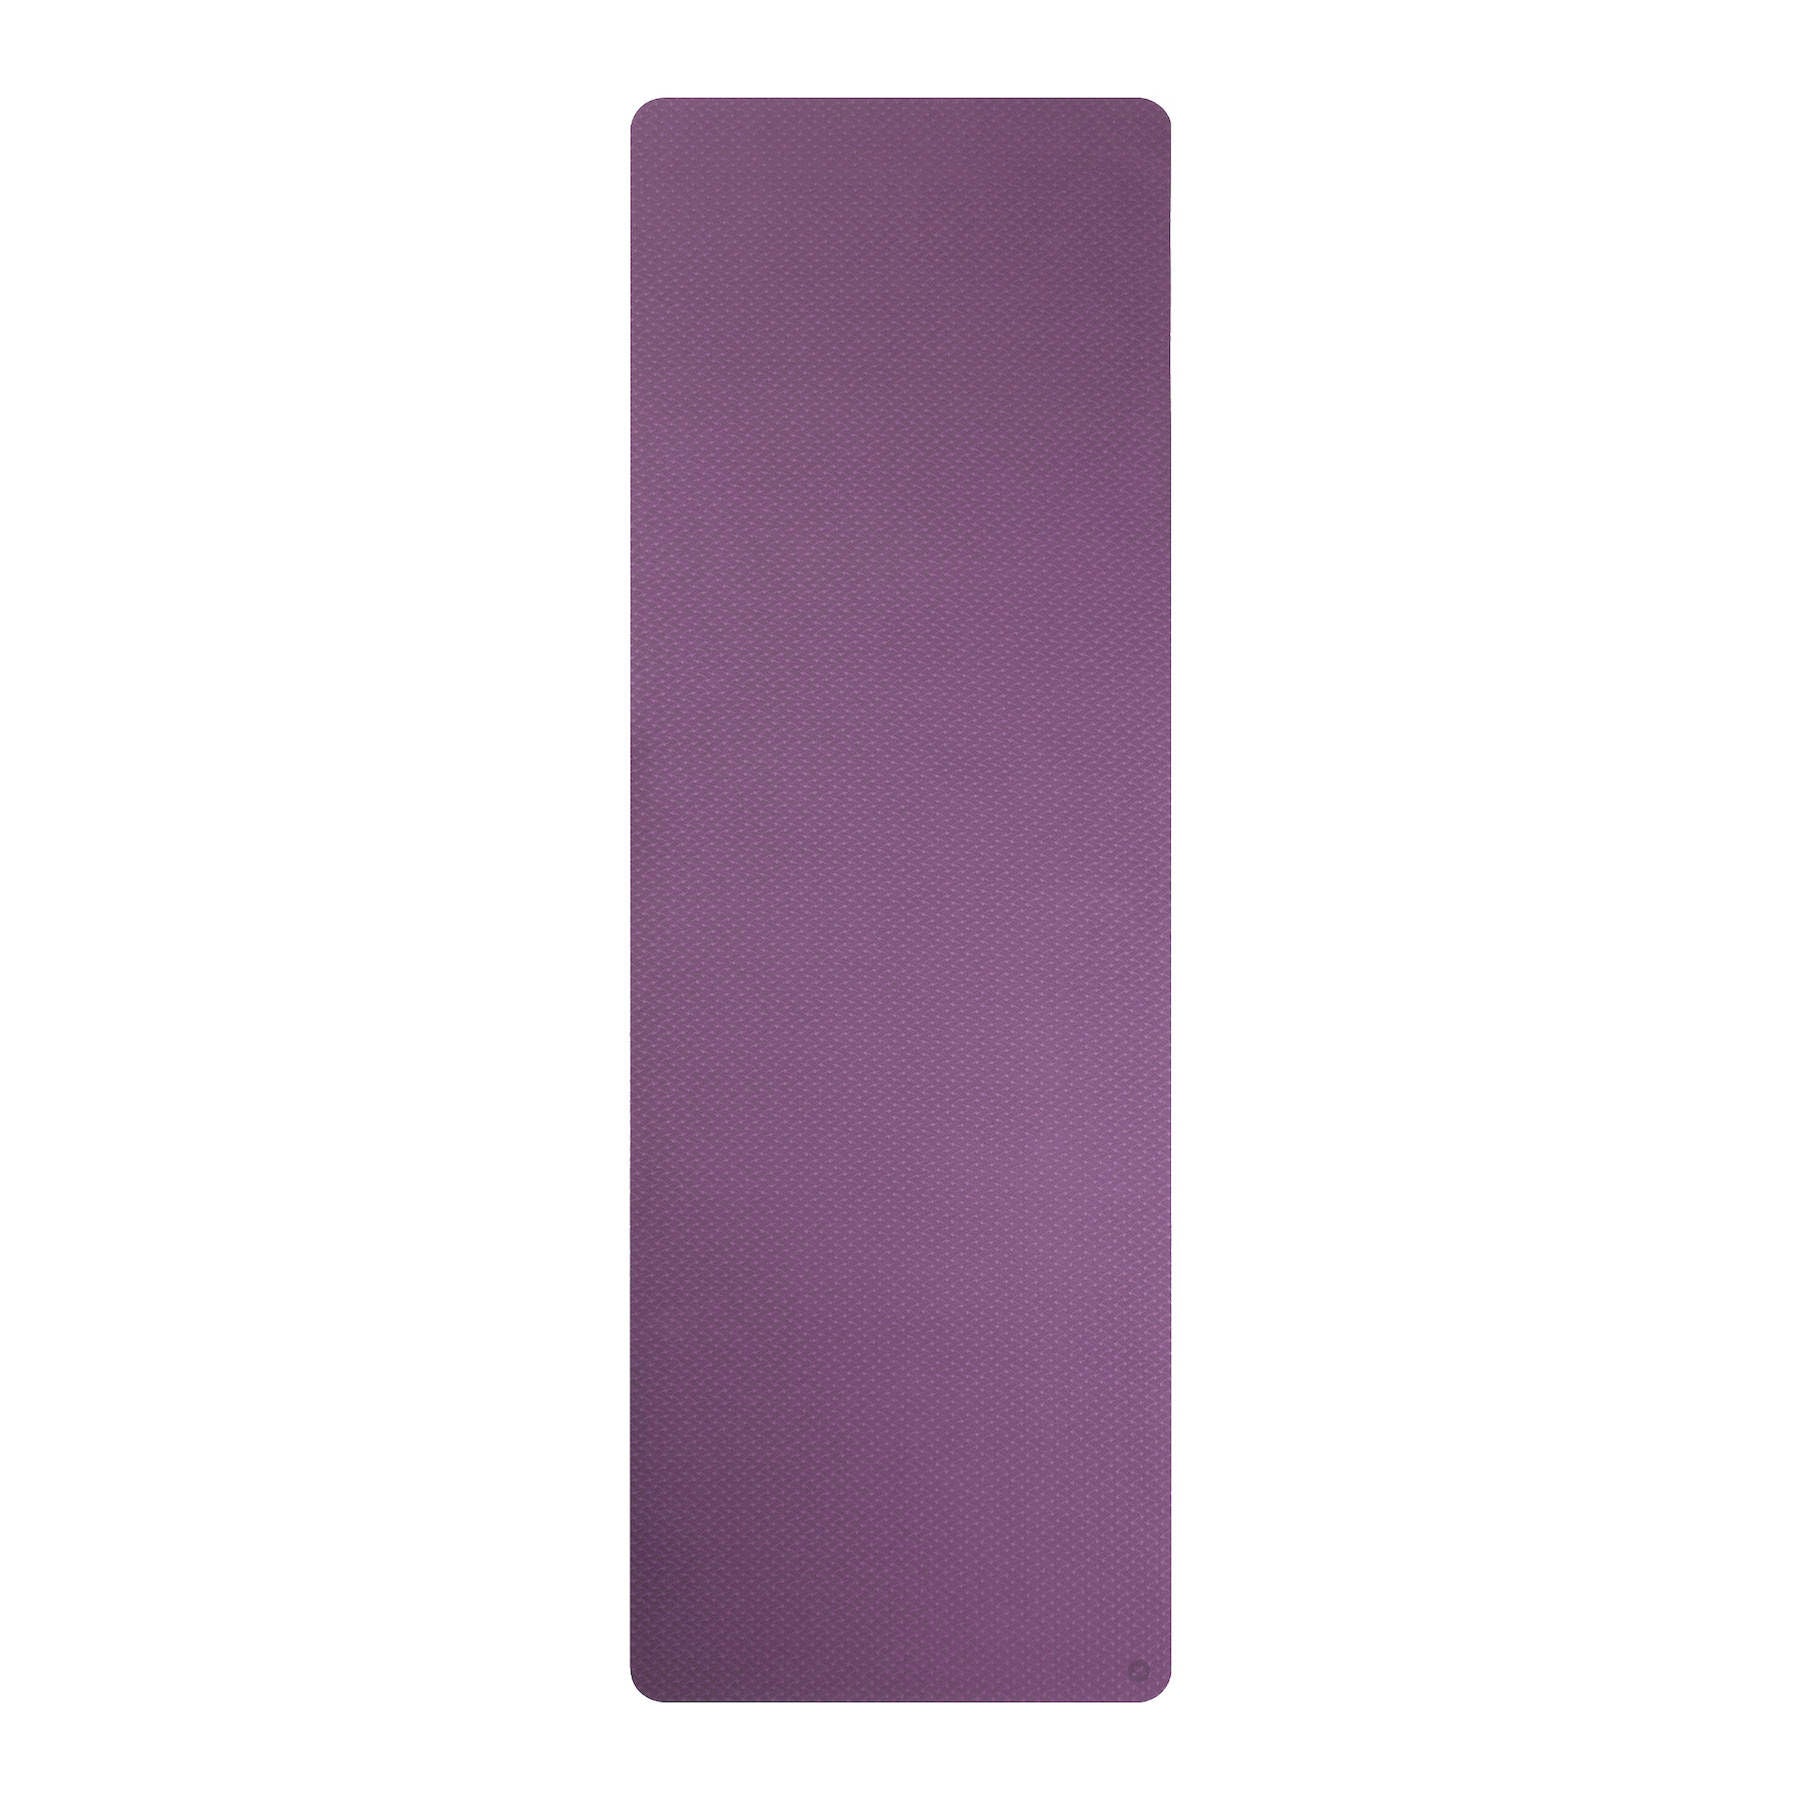 Tapis de yoga en TPE violet, extra léger, sans PVC, écologique, épaisseur 6mm